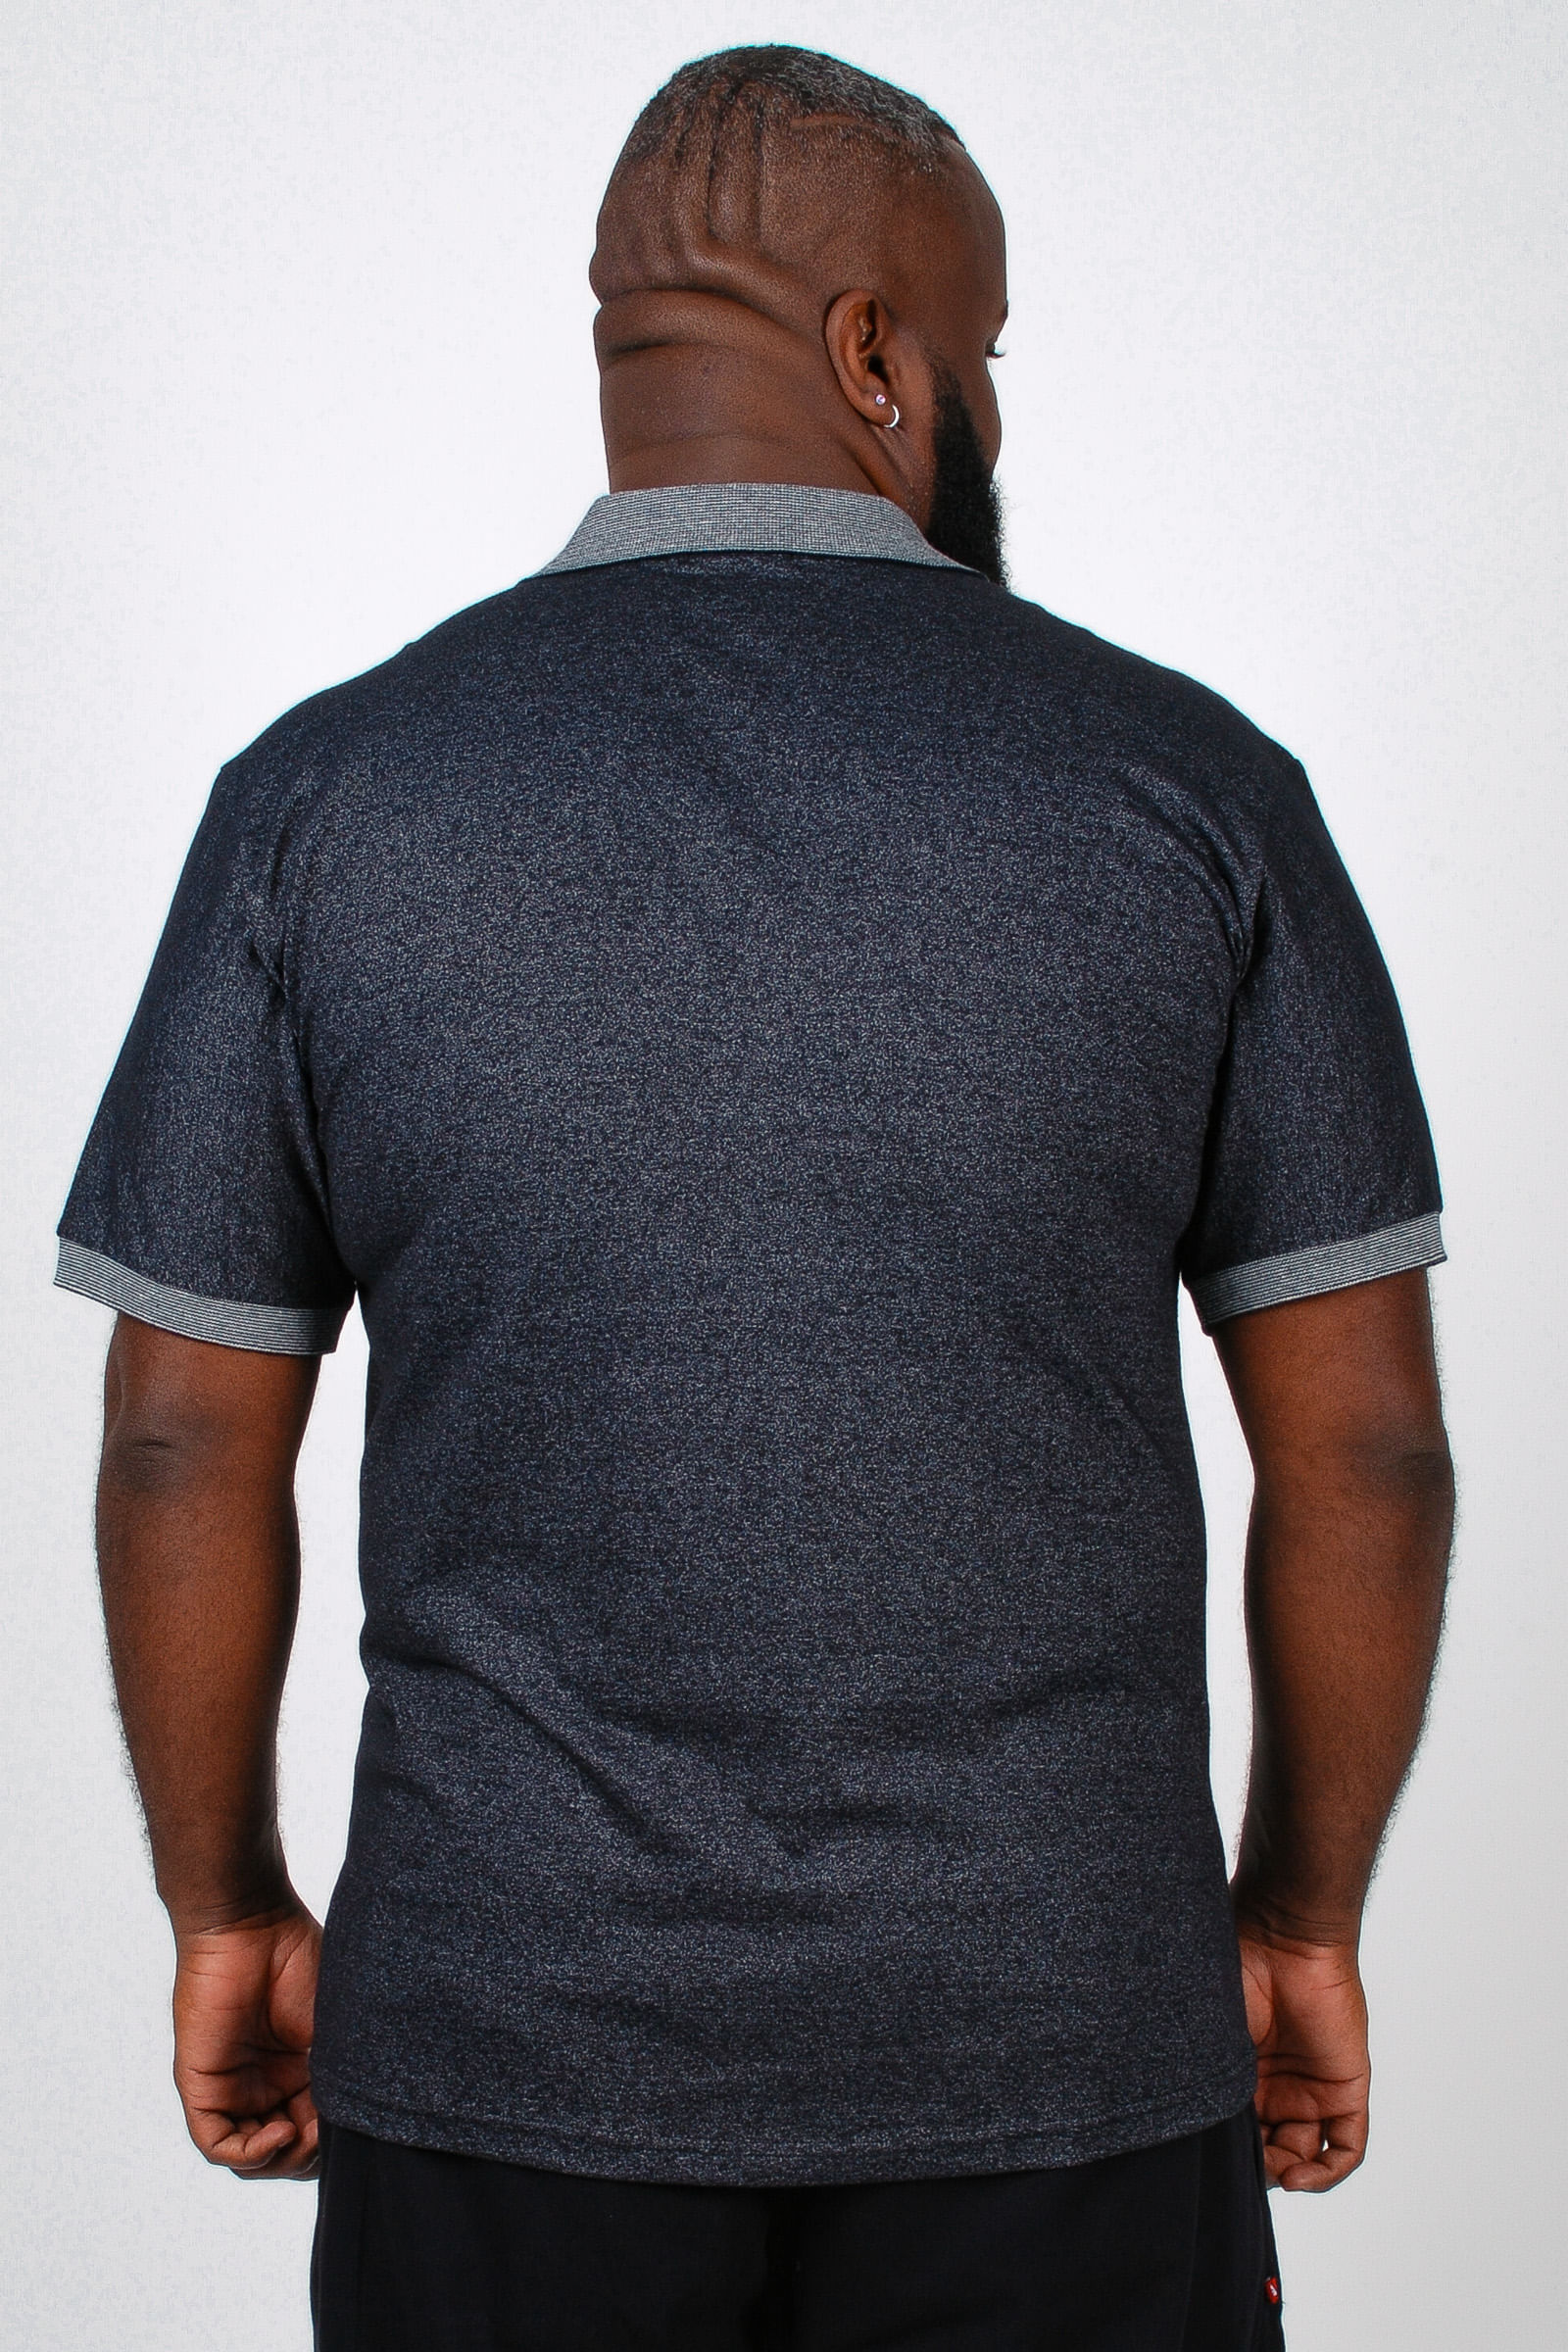 Camiseta-polo-manga-curta-mesclada-plus-size